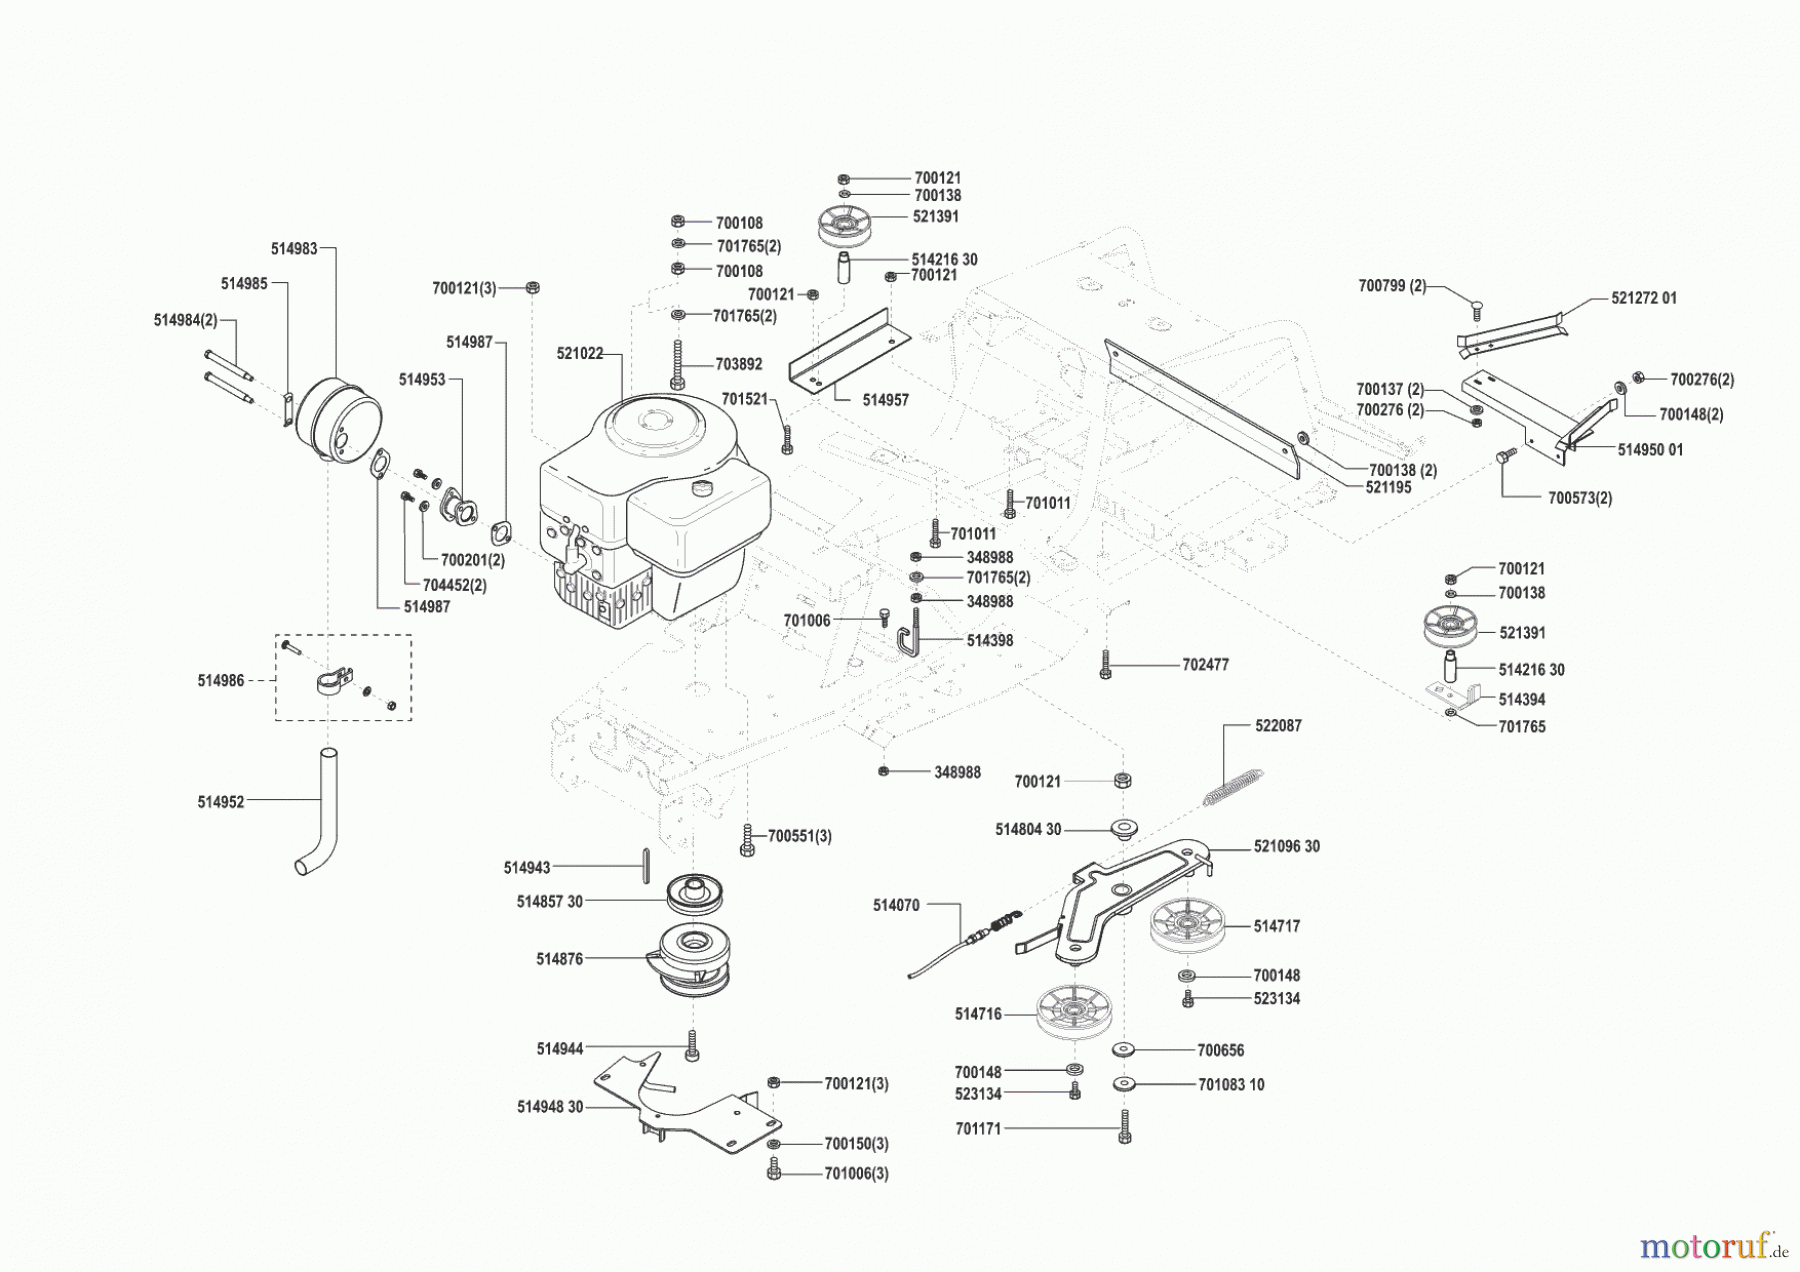  Concord Gartentechnik Rasentraktor T16-102 vor 02/2000 Seite 4